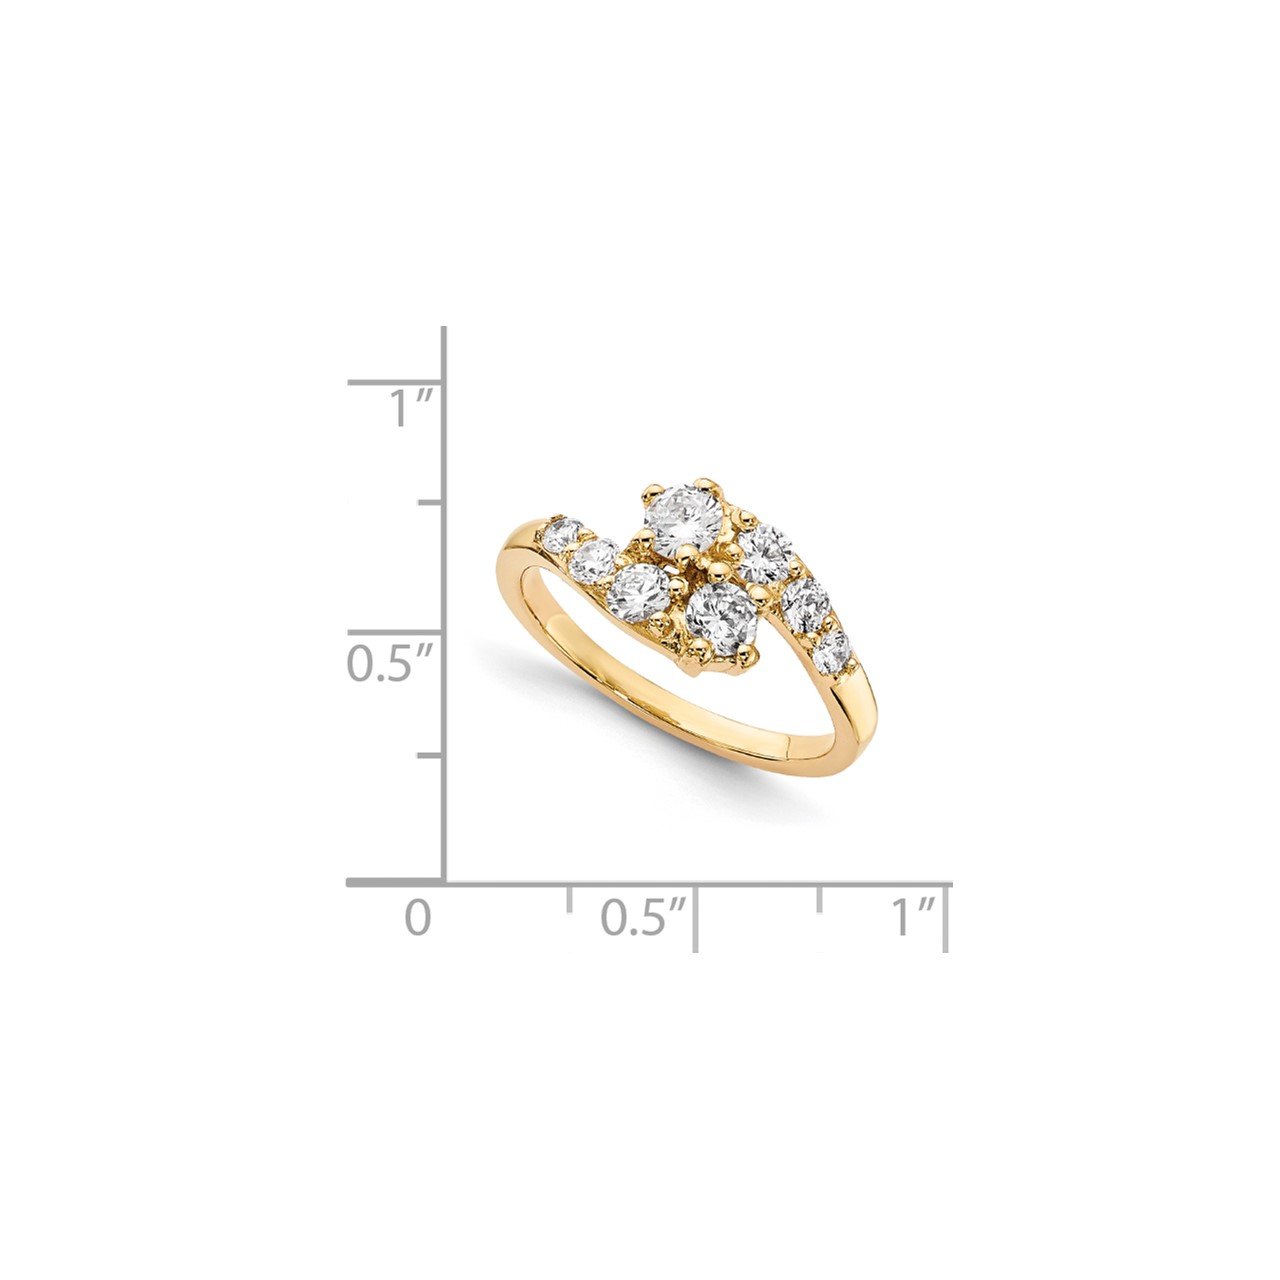 14KY AA Diamond 2-stone Ring Semi-Mount - 4 mm center stones-6